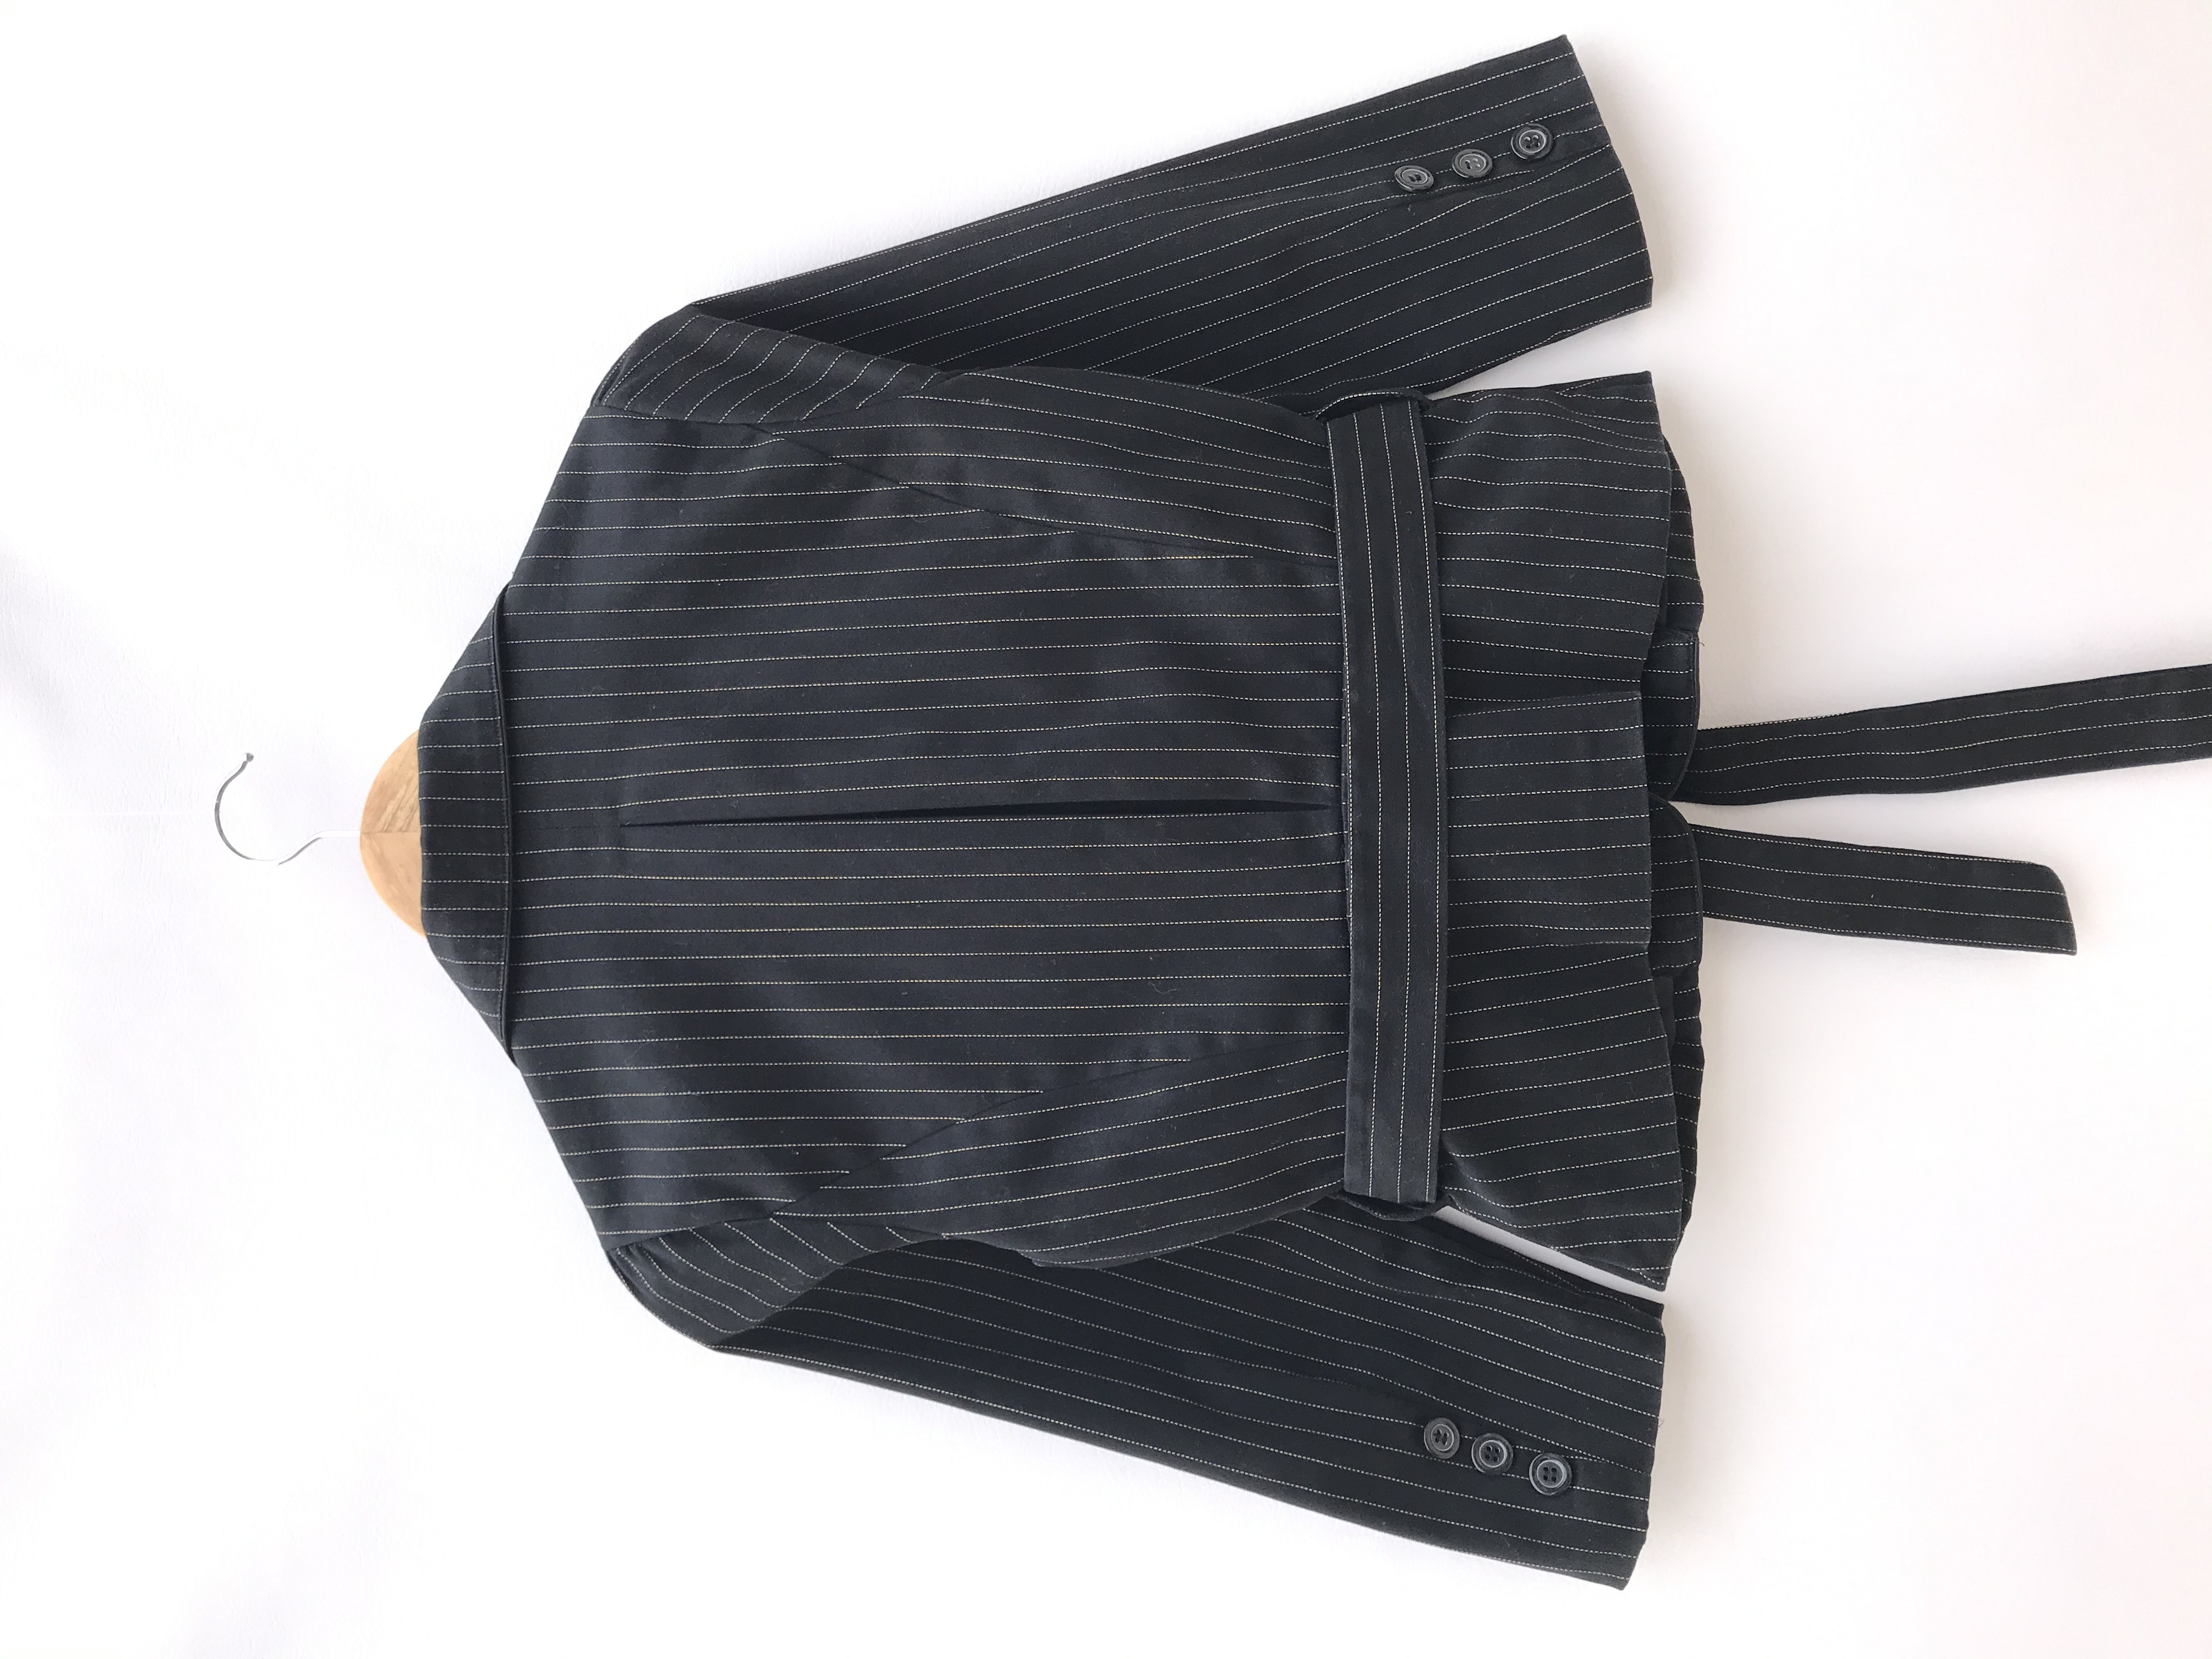 Blazer corto negro con líneas punteadas en tono beige, 95% algodón, un botón, manga 3/4 con botones, cinto para amarrar y lleva forro